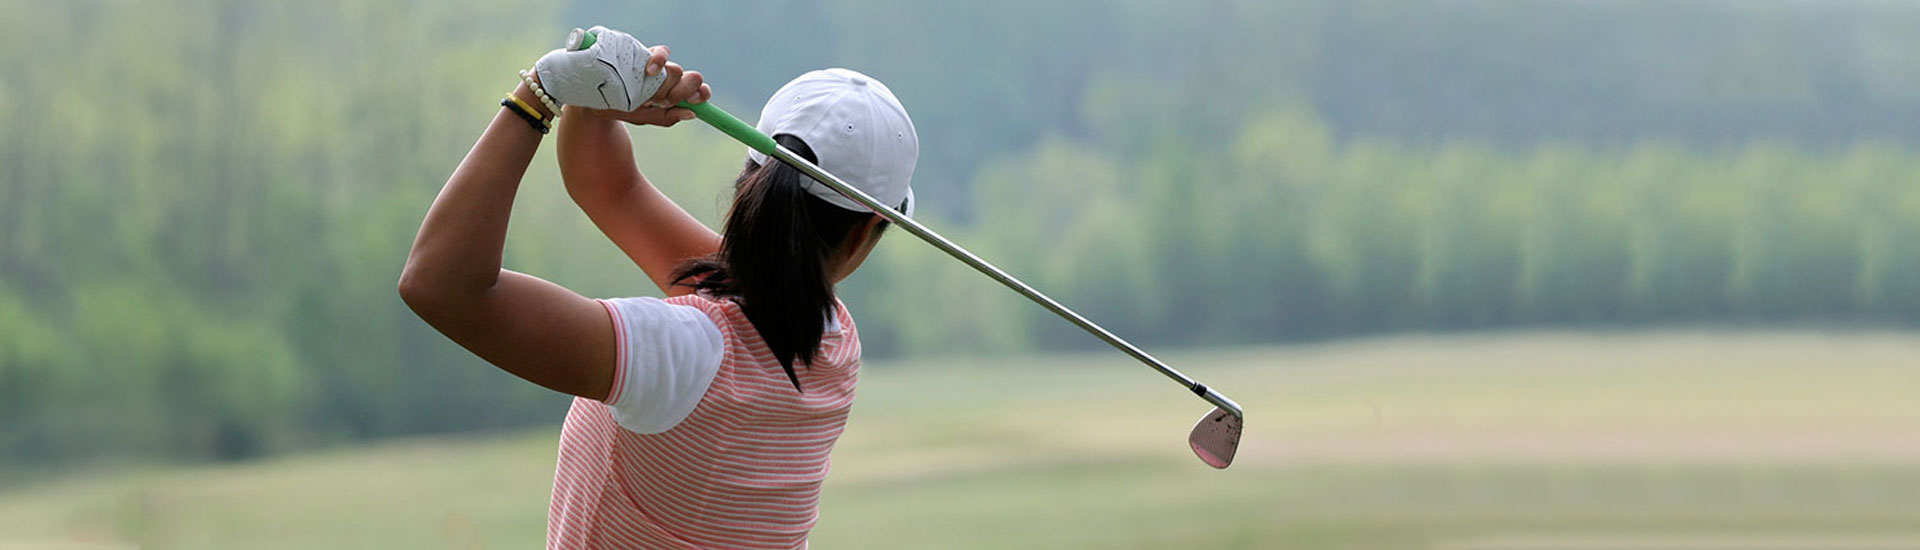 A Women Playing Golf